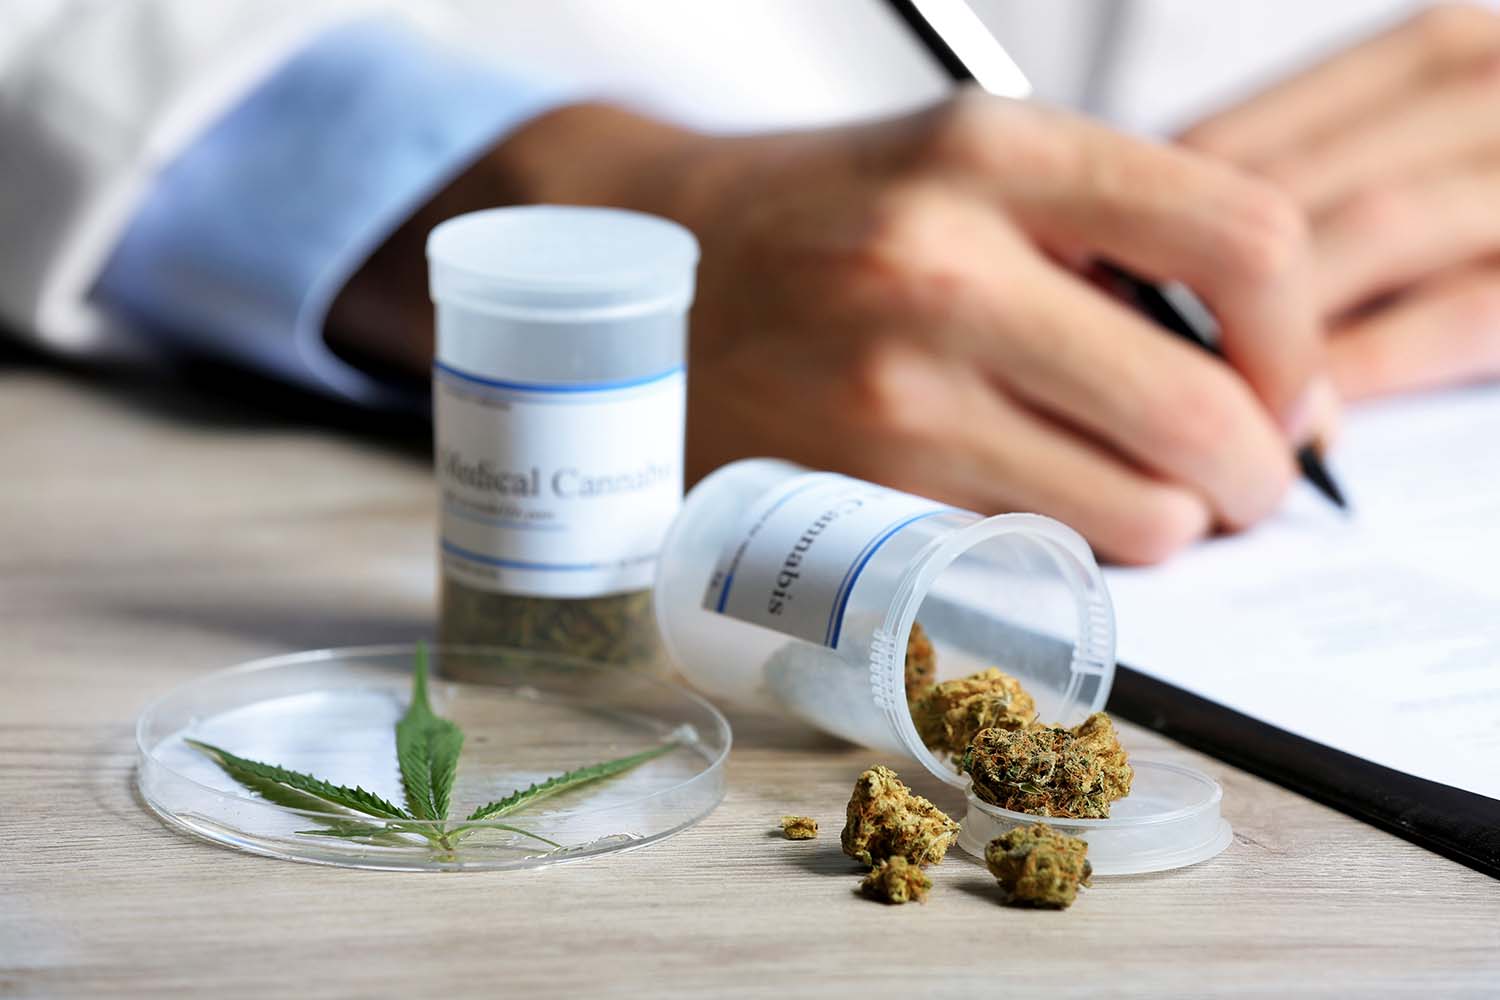 Bei Patienten mit schwerwiegenden Erkrankungen ist seit 2017 die Verordnung von medizinischem Cannabis möglich. Mit dem Inkrafttreten des Cannabisgesetzes zum 1. April hat sich eine kleine Änderung bei der Verordnung ergeben. 